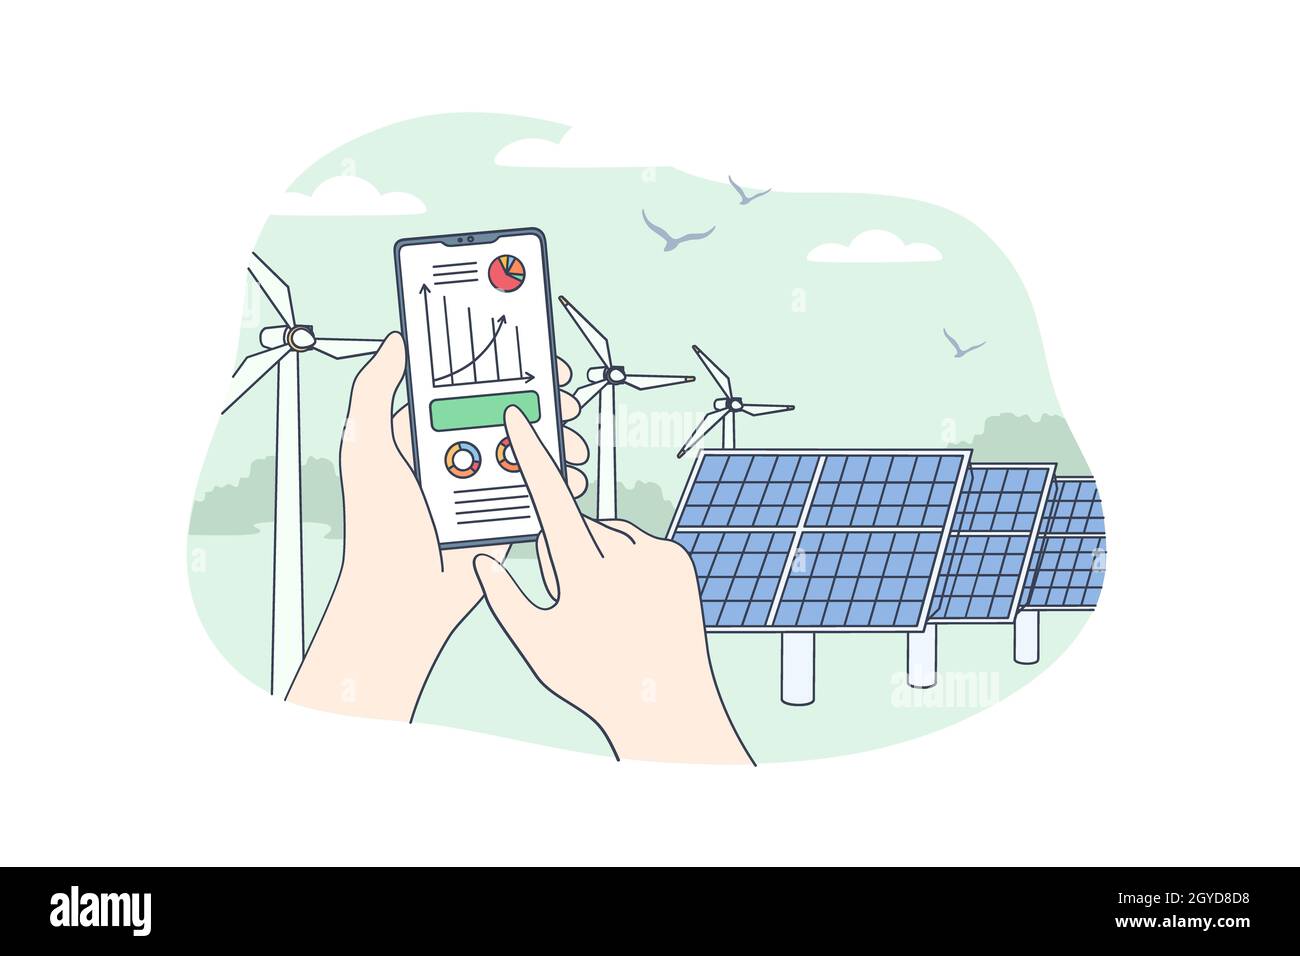 Concept d'énergie renouvelable durable.Mains humaines tenant un smartphone mobile avec application de surveillance de la consommation d'énergie électrique avec un stat de stockage de centrale électrique Banque D'Images